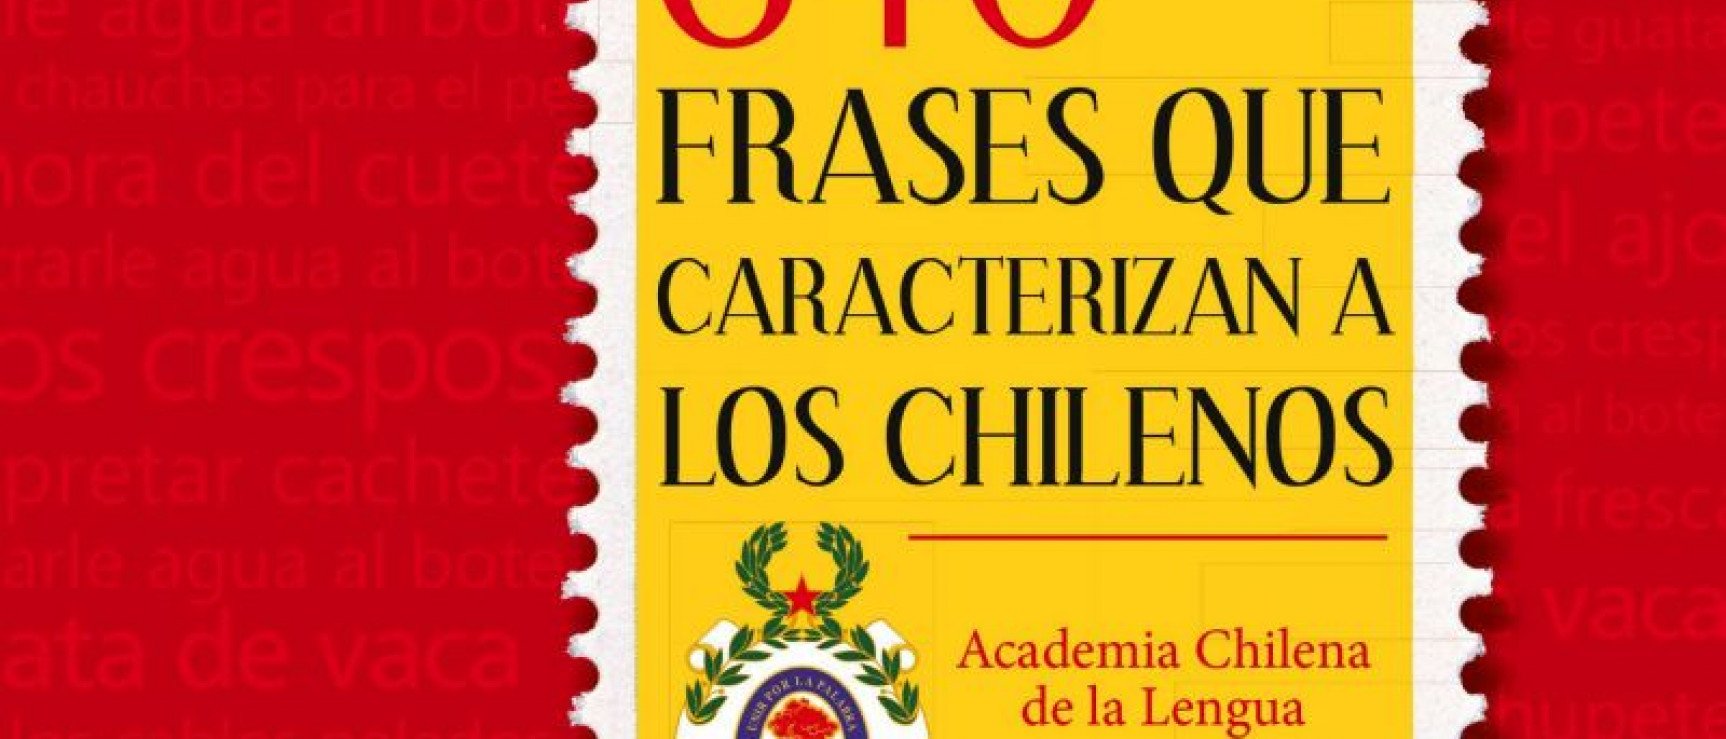 Portada de «640 frases que caracterizan a los chilenos», de la Academia Chilena de la Lengua.